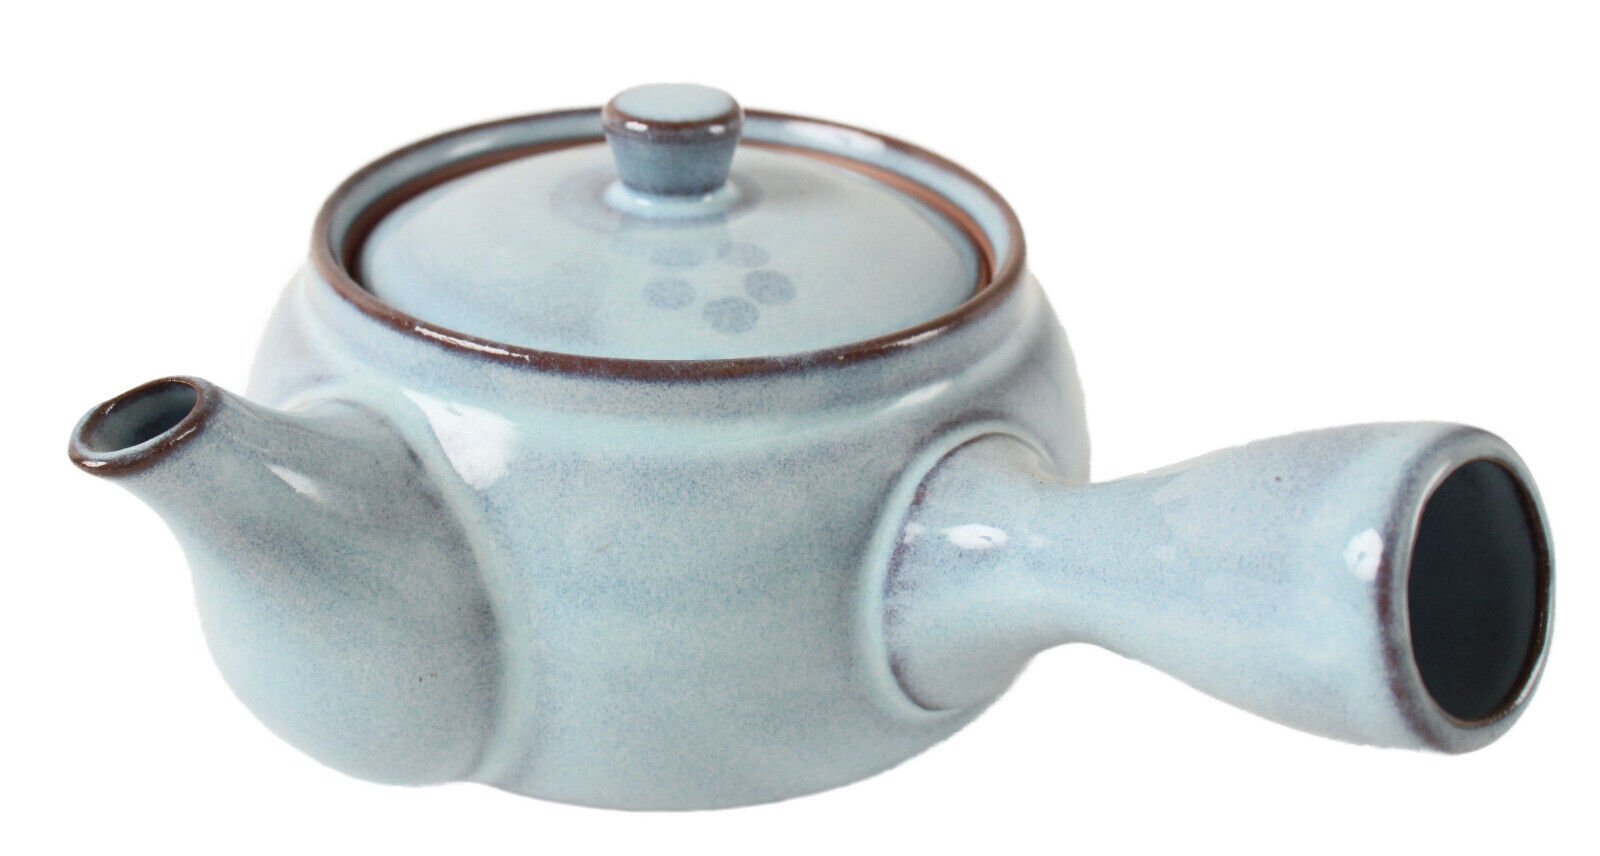 Mino ware Japan Pottery Teapot Kyusu Flower Pattern in Light Blue w/ Infuser